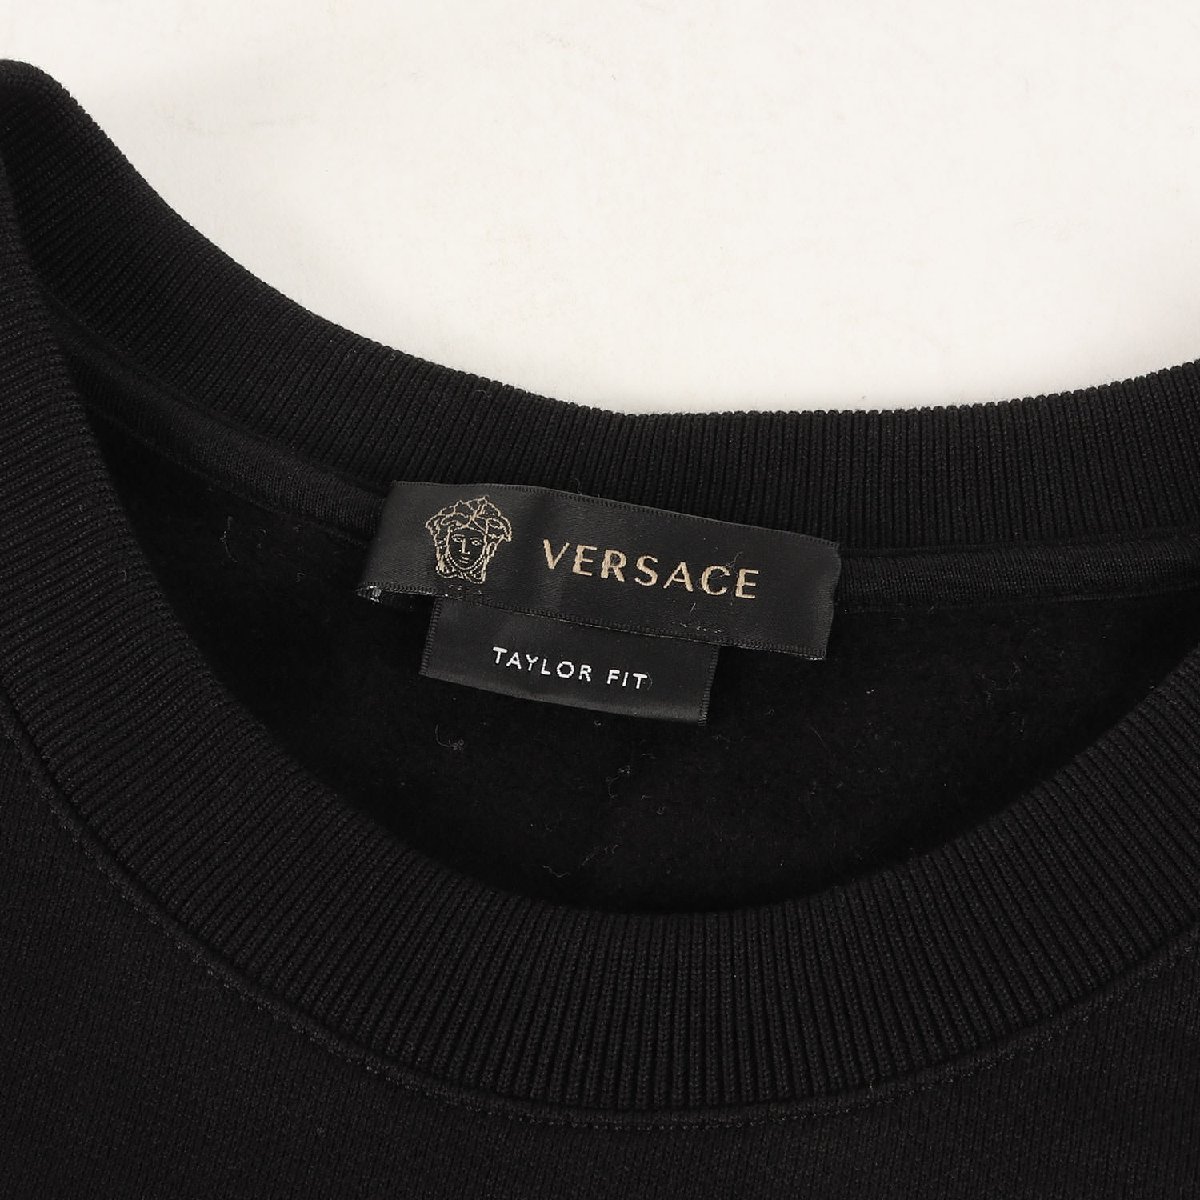 VERSACE Versace тренировочный размер :L 21AW Circle signature Logo вышивка вырез лодочкой спортивная фуфайка черный Италия производства 